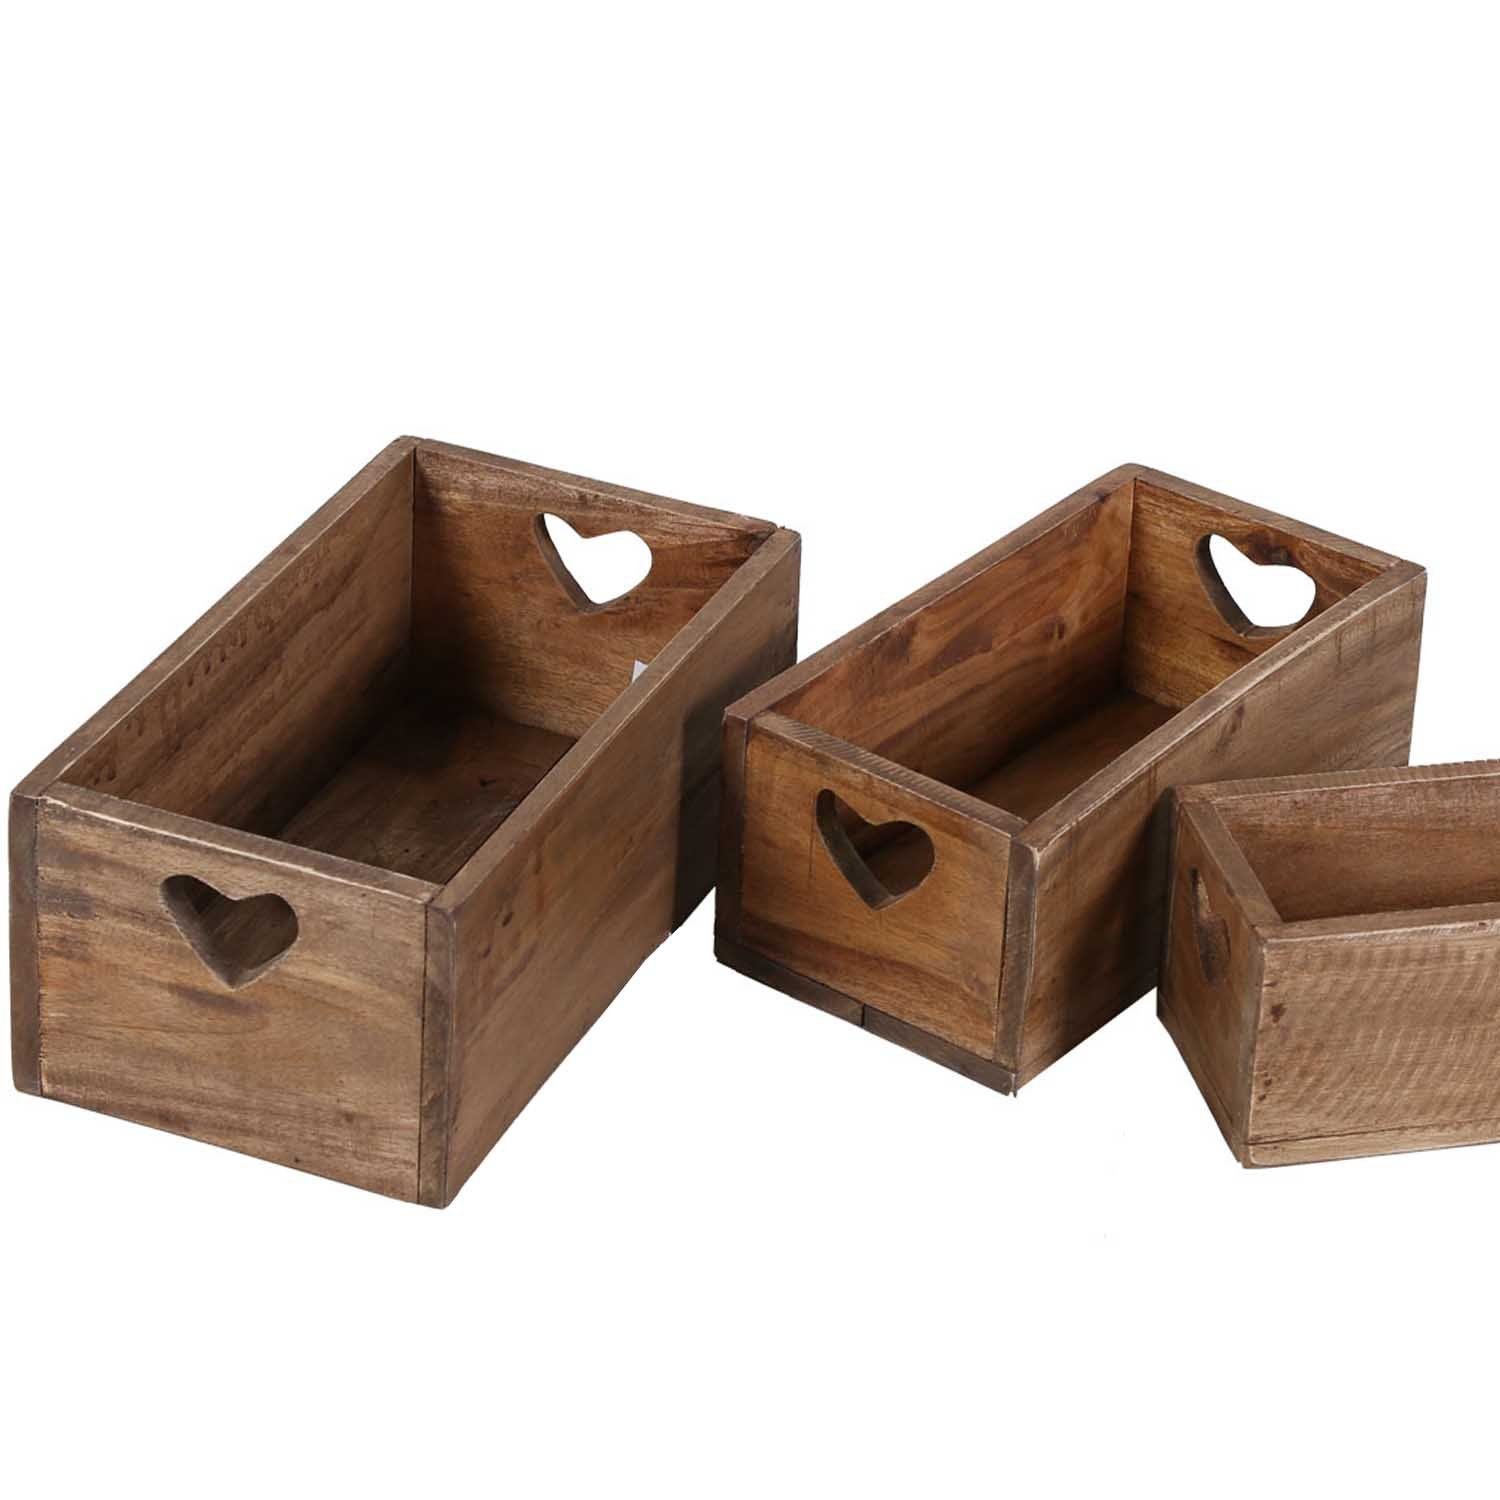 Casa Moro Aufbewahrungsbox Retro Teak Holzbox 3er Set LUCIA alte Ziegelform mit Herz Griffen (Blumenkiste, Holz Kasten, Aufbewahrung & Deko), aus recyceltem Teak Holz gefertigt